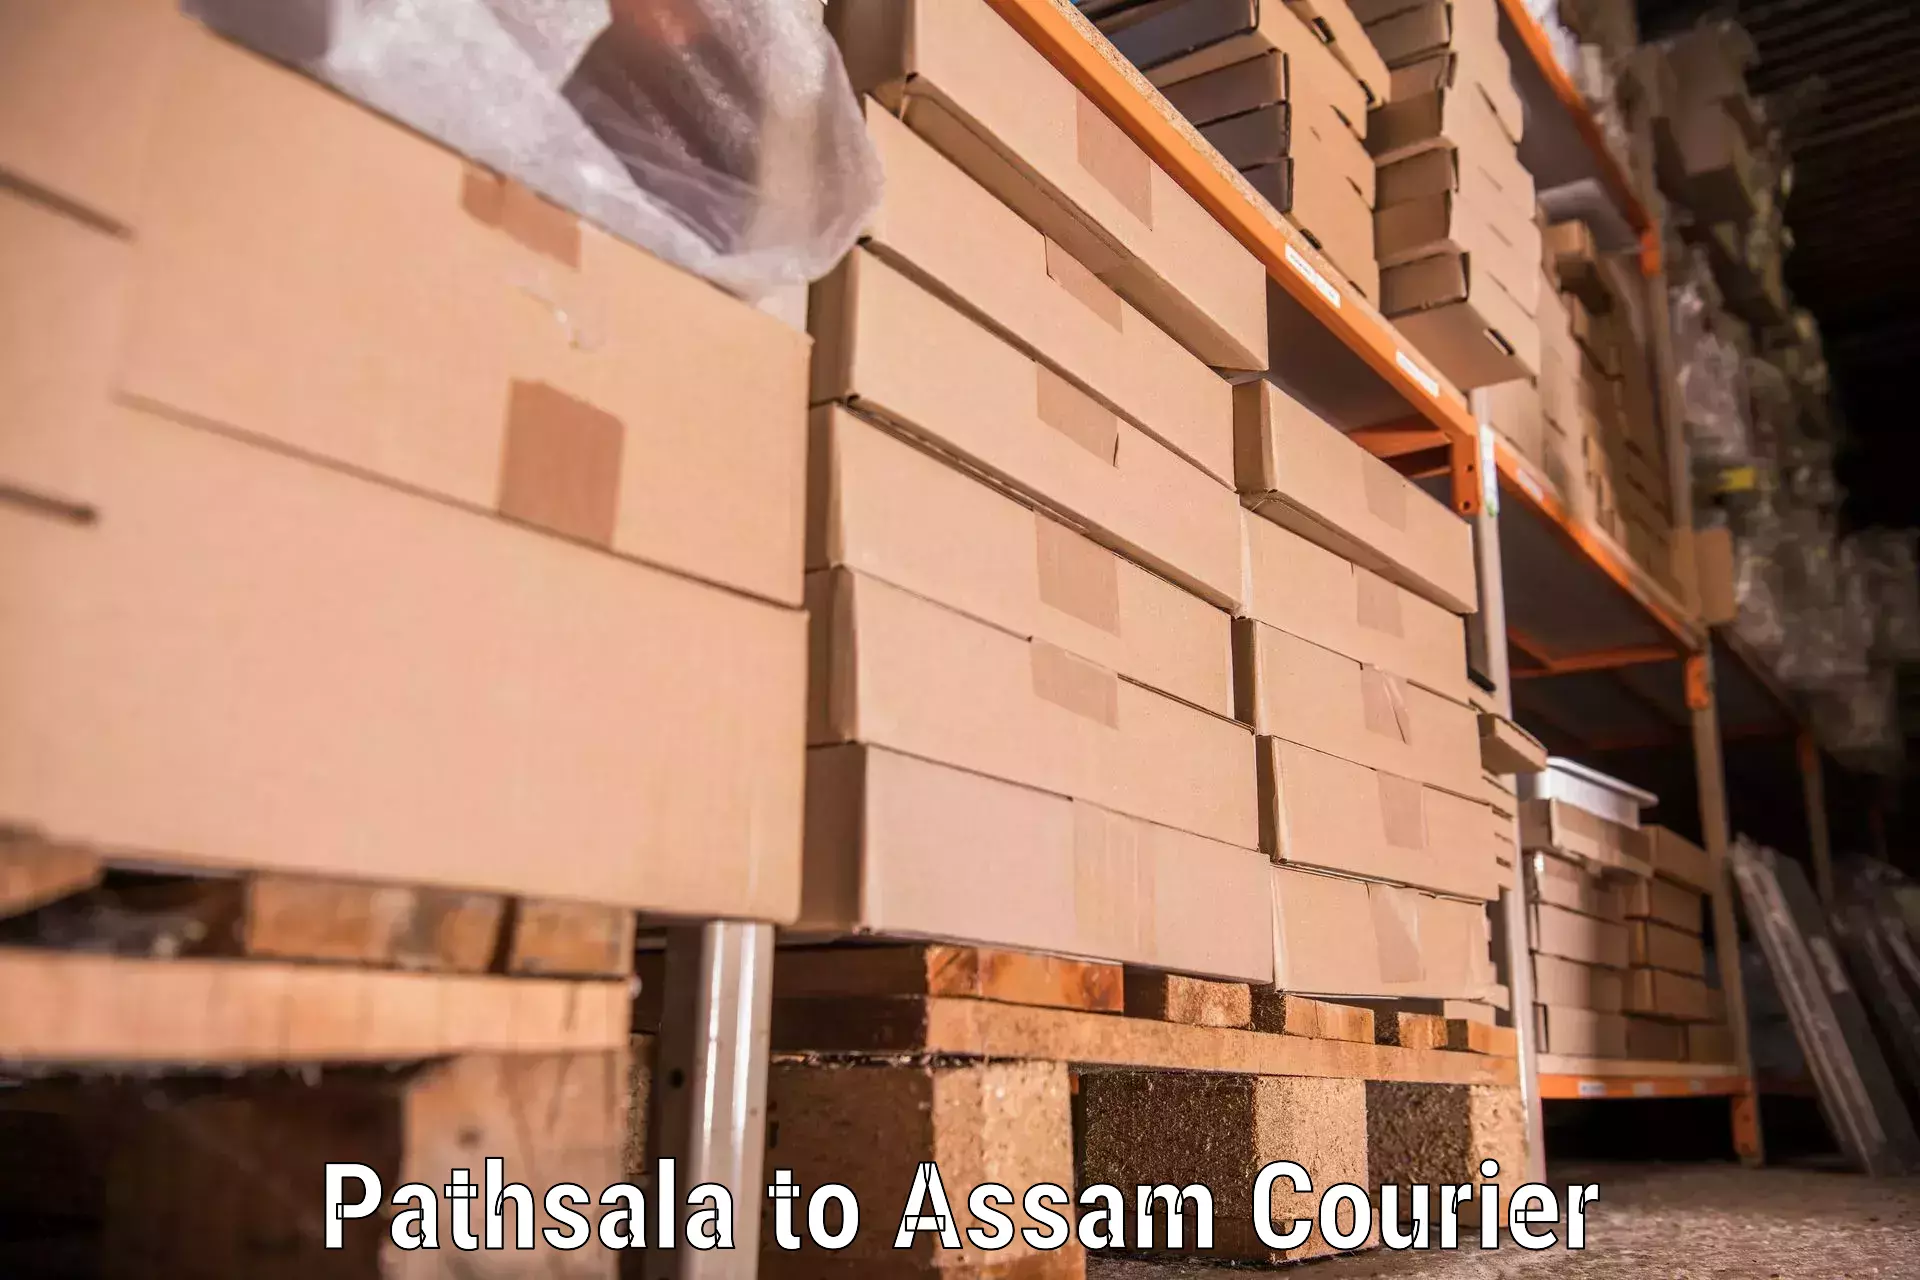 Furniture moving experts Pathsala to Fekamari